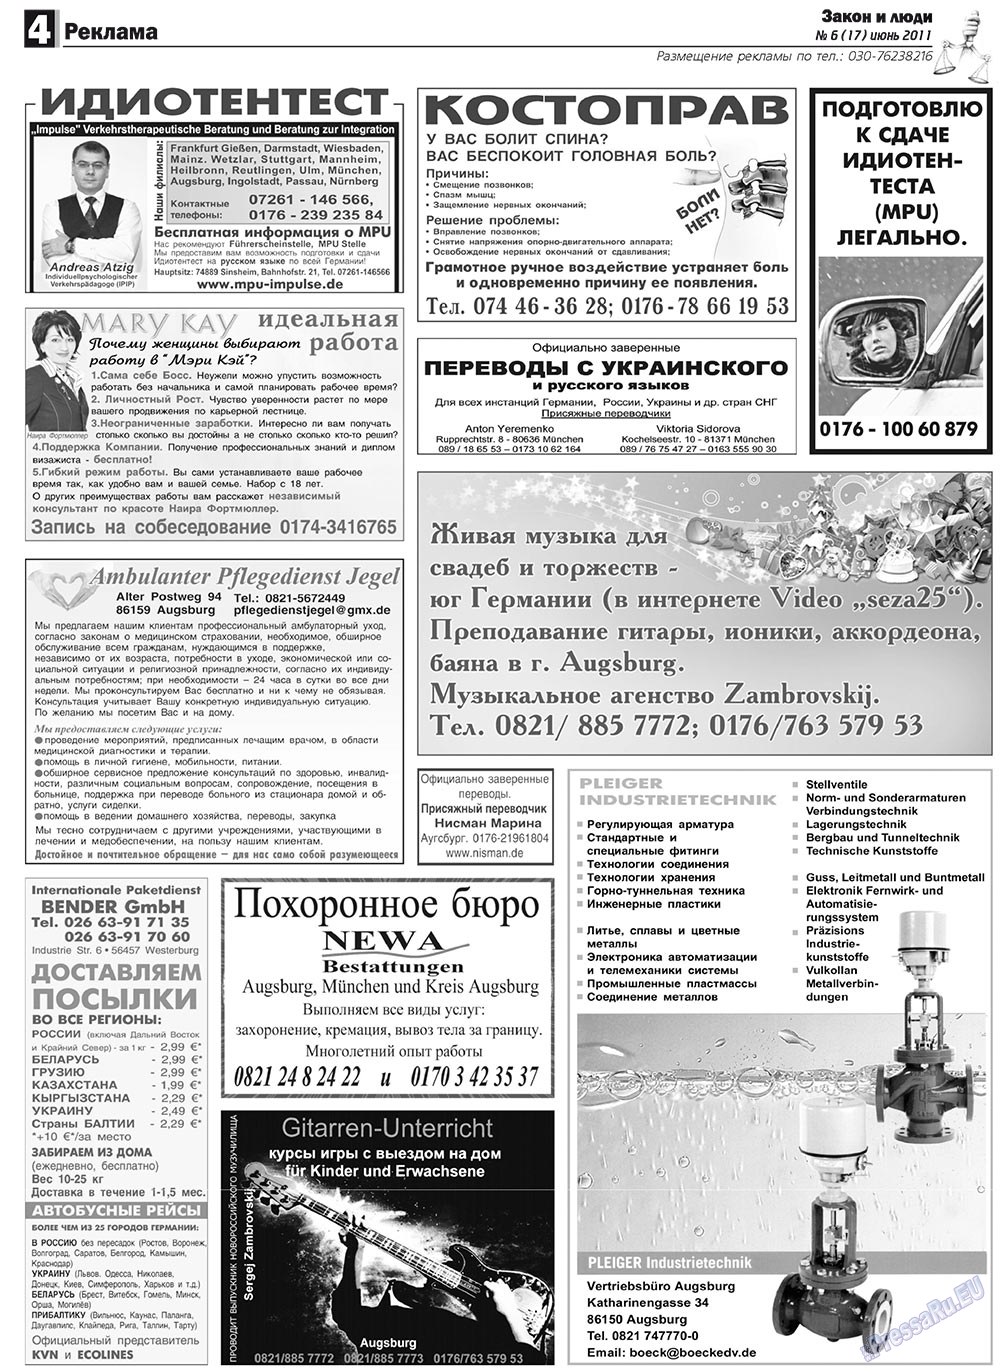 Закон и люди, газета. 2011 №6 стр.4